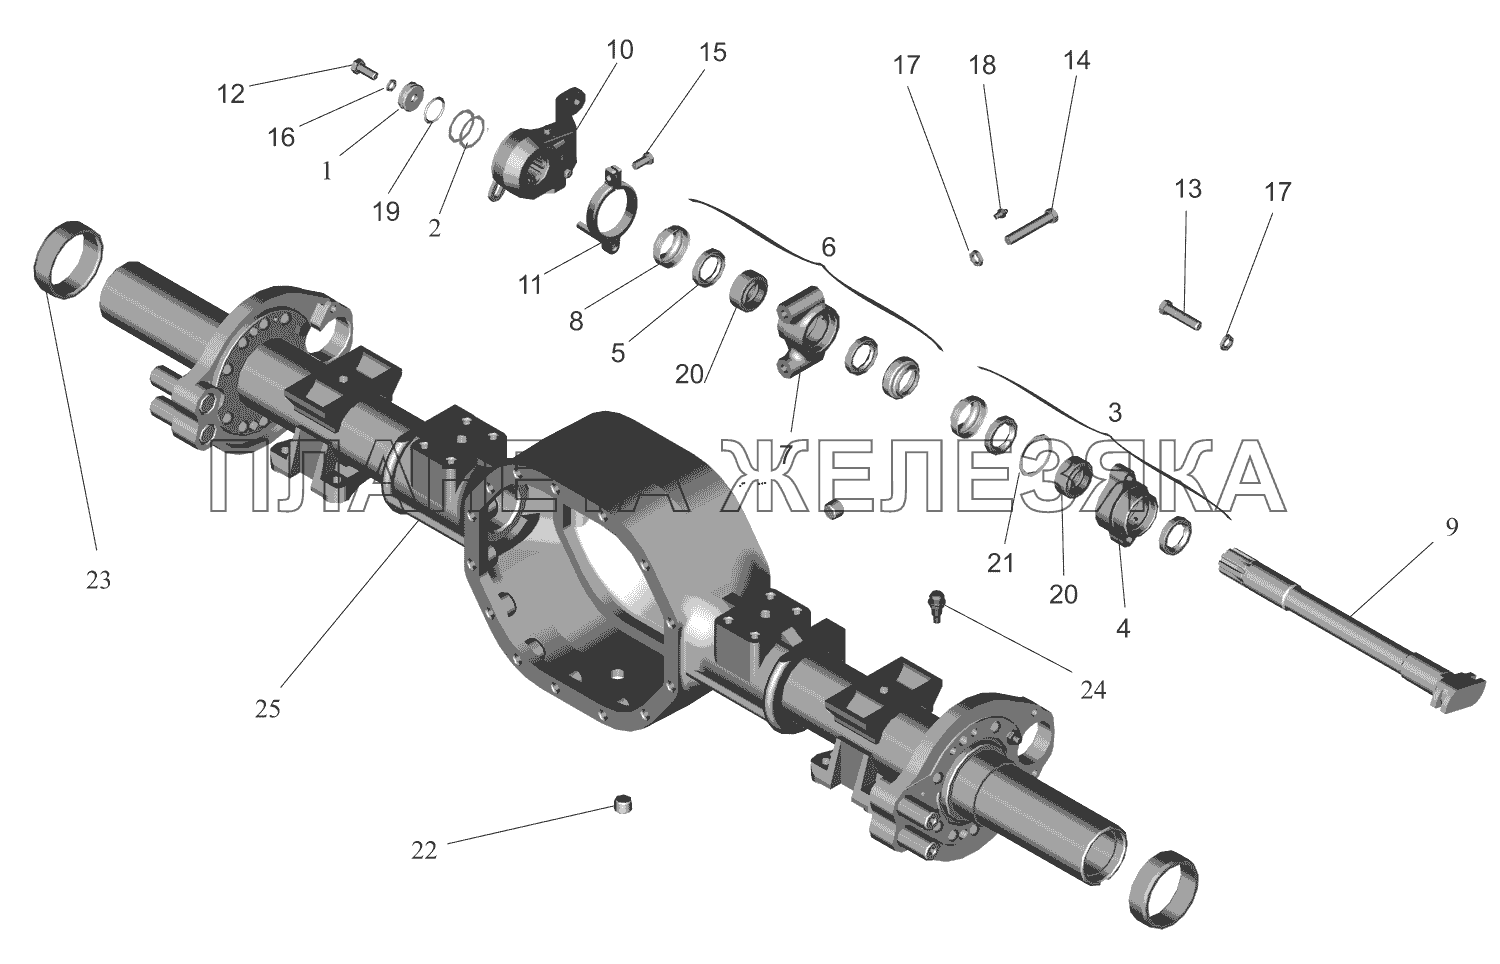 Привод тормозного механизма задних колес МАЗ-437130 (Зубренок)